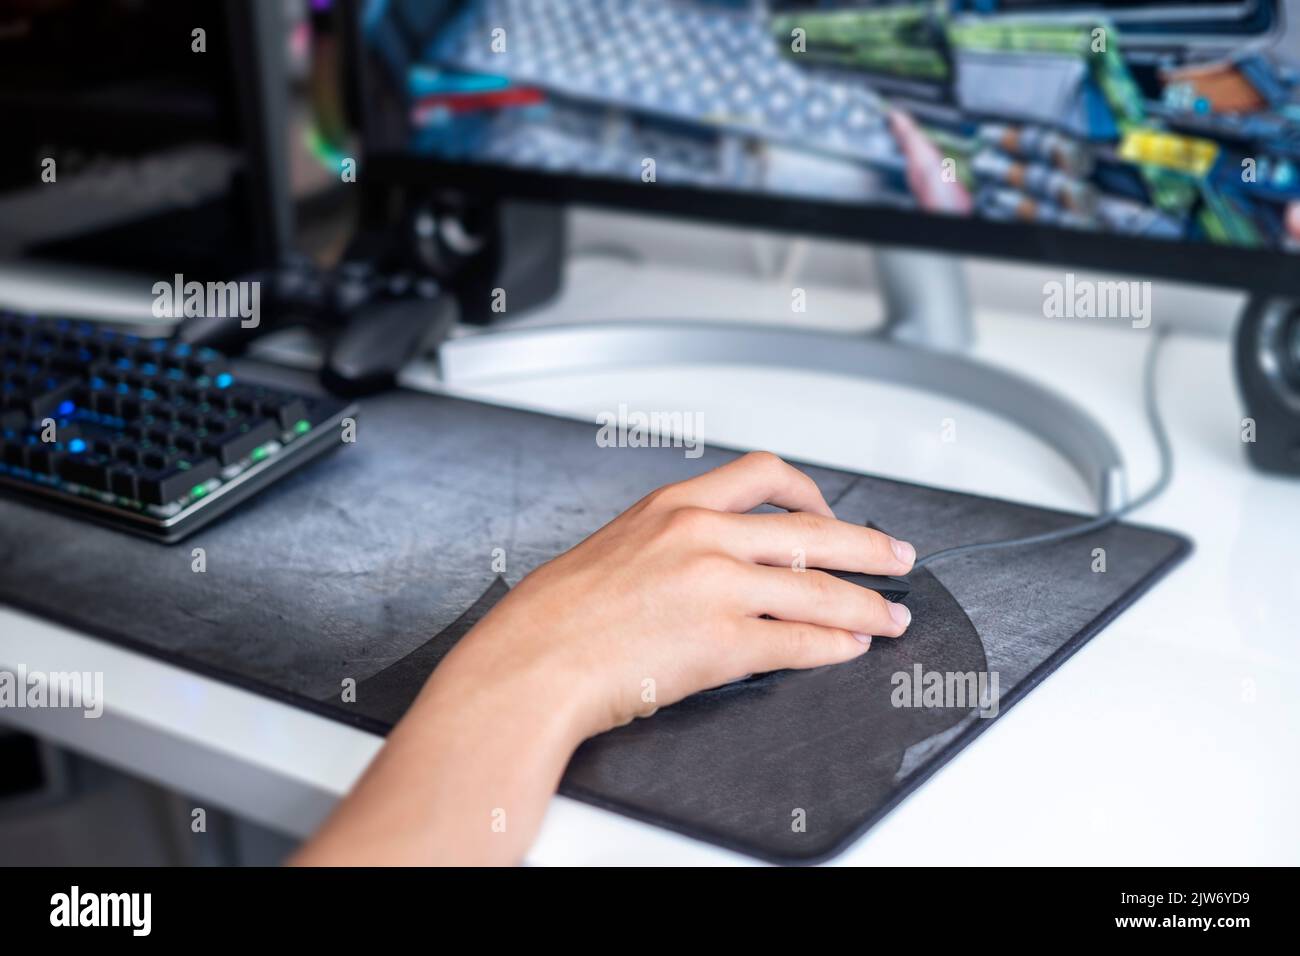 fuoco selettivo di una mano adolescente che gioca su un computer da gioco, con una tastiera nera su un grande mouse pad grigio, giochi di rete online, oltre a vi Foto Stock